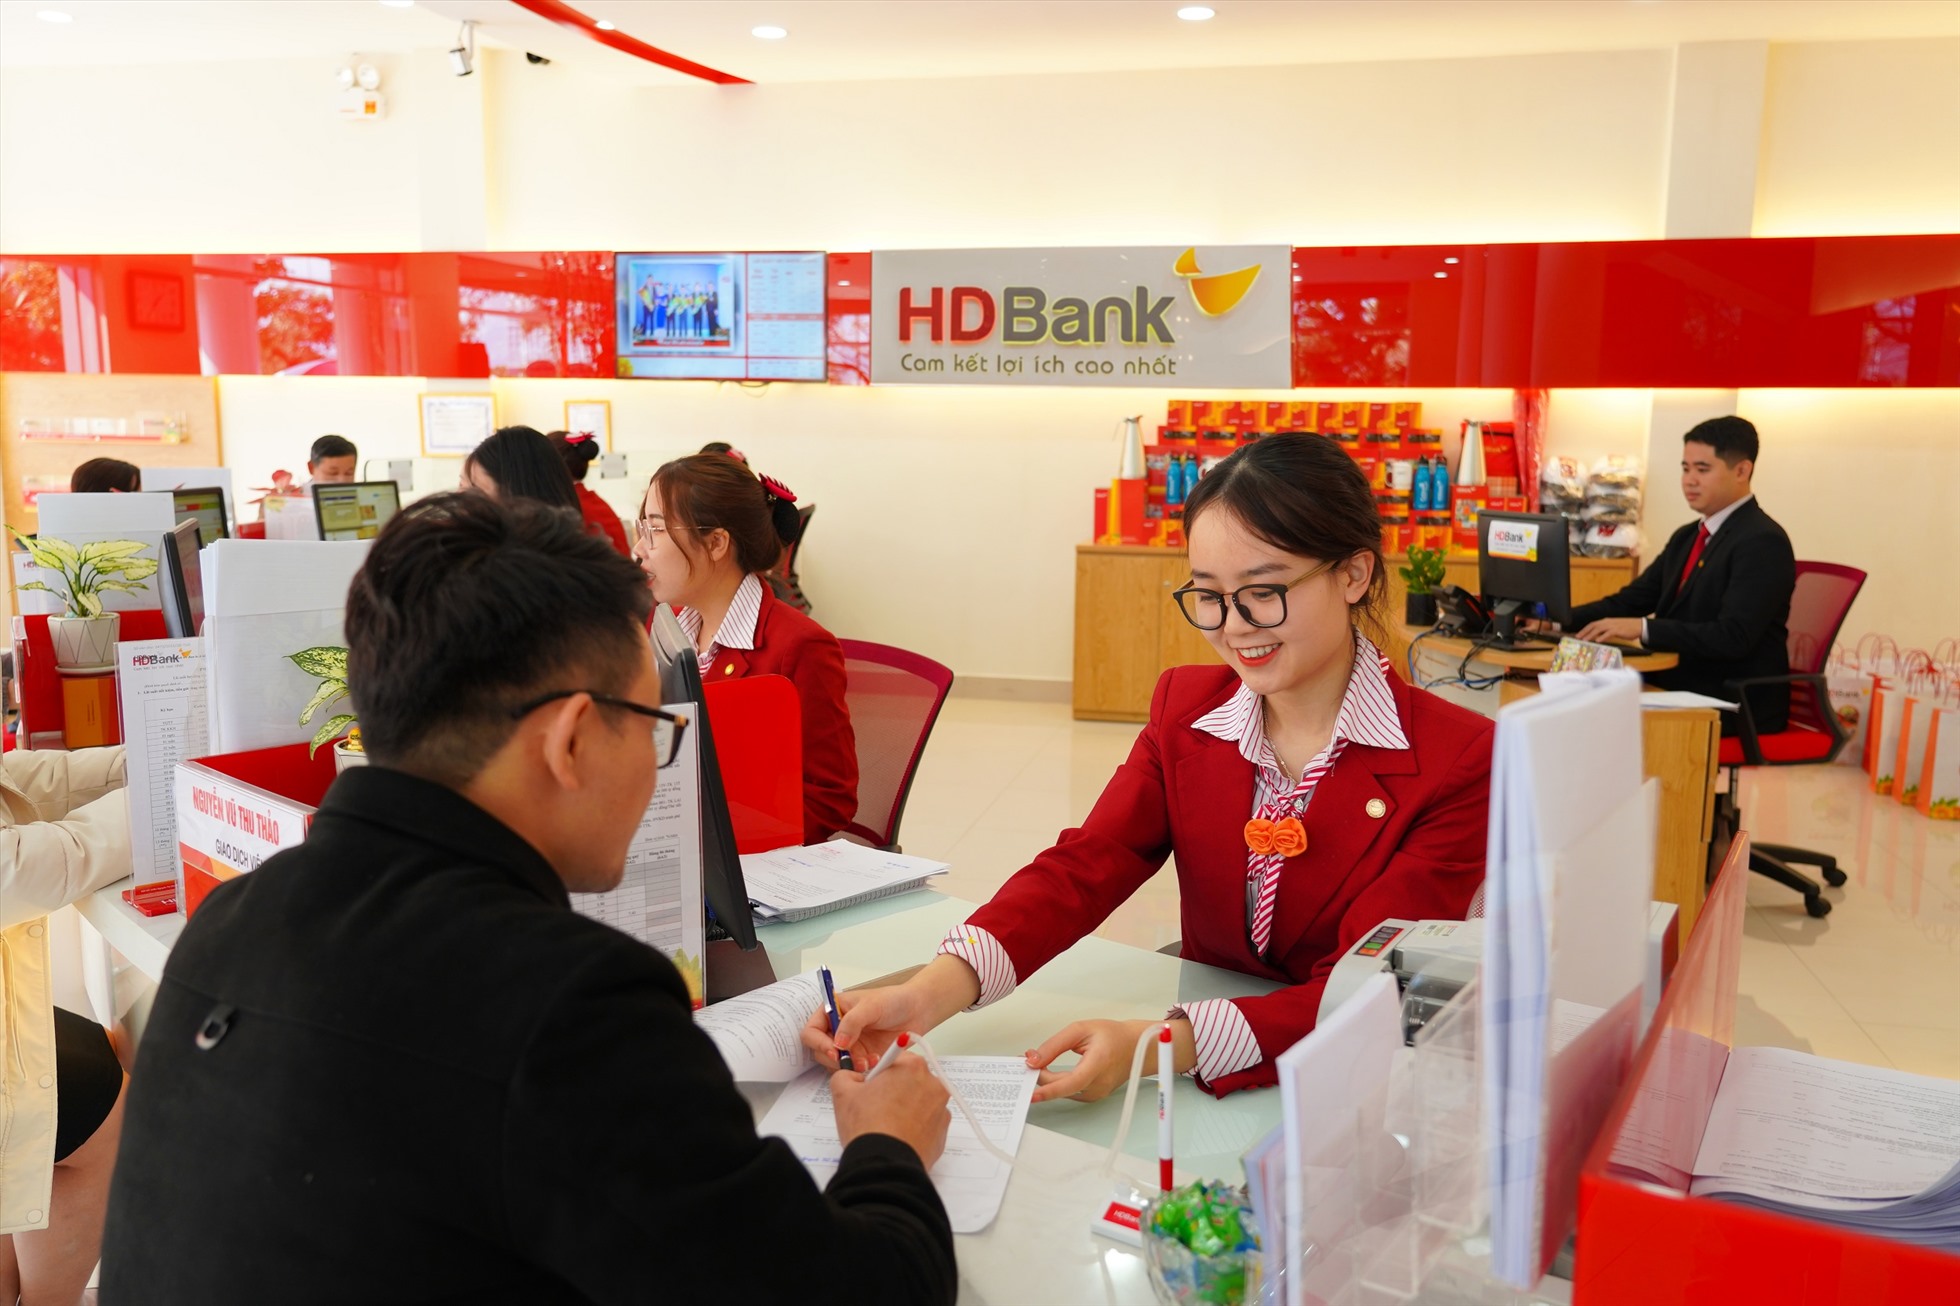 Trong thời gian tới, HDBank dự kiến sẽ tiếp tục mở rộng mạng lưới, đồng thời gia tăng phát triển các dịch vụ hiện đại. Nguồn: HDBank